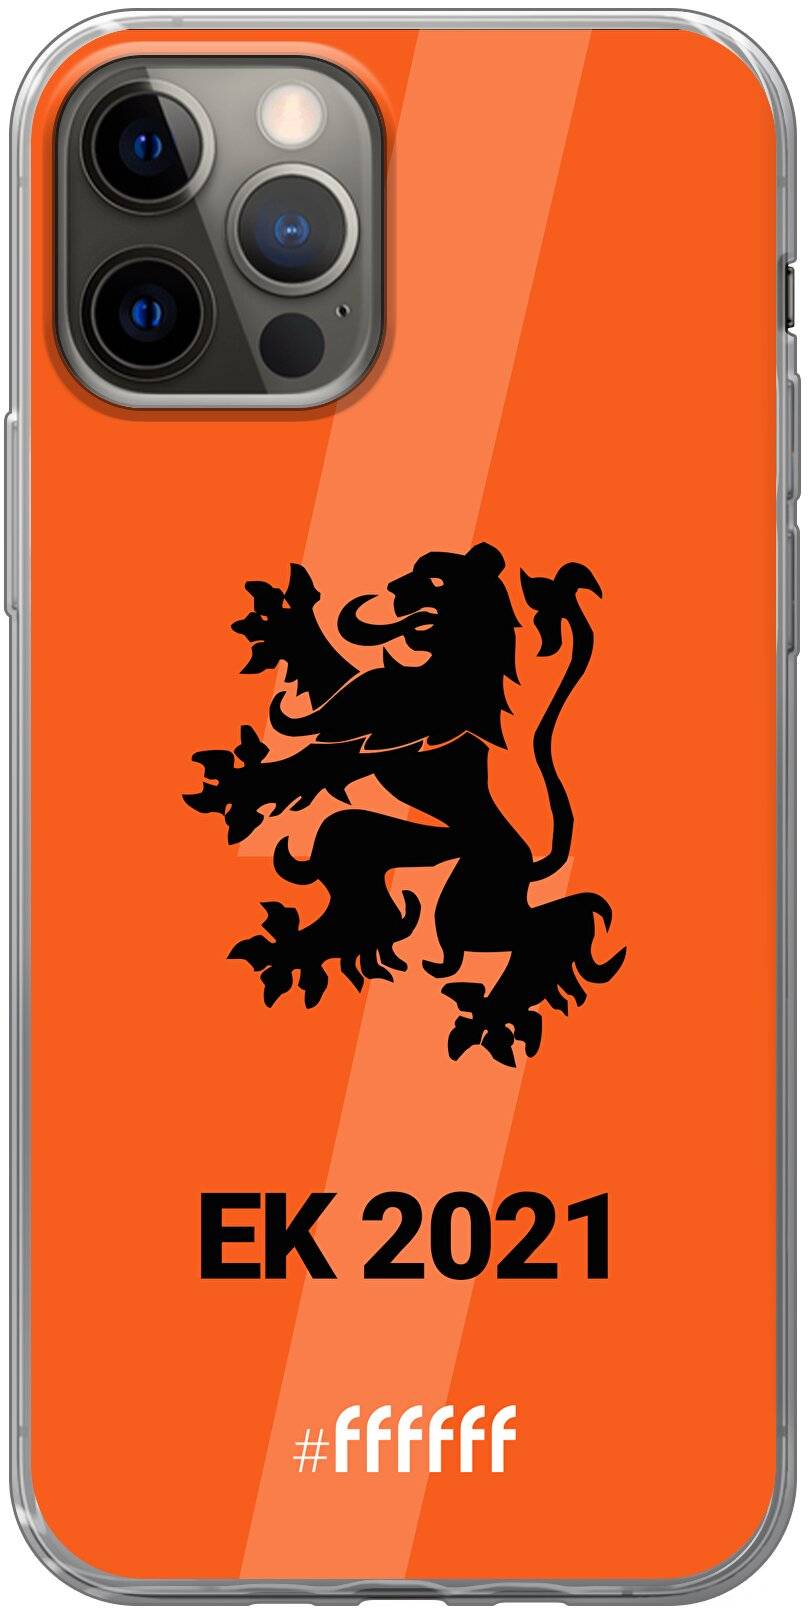 Nederlands Elftal - EK 2021 iPhone 12